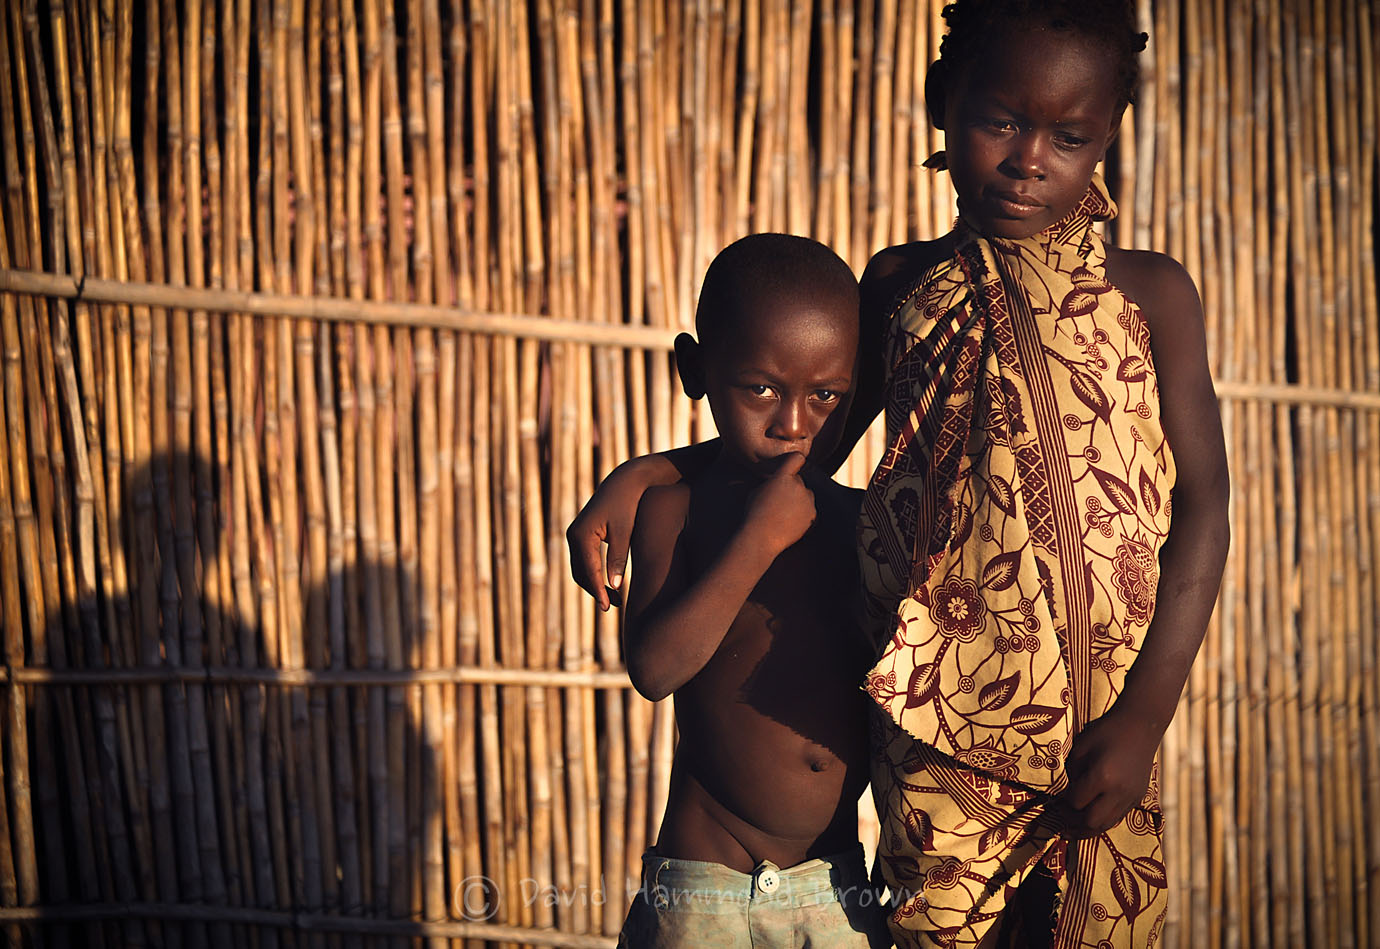 David Hammond Brown Photography - Children of Mozambique